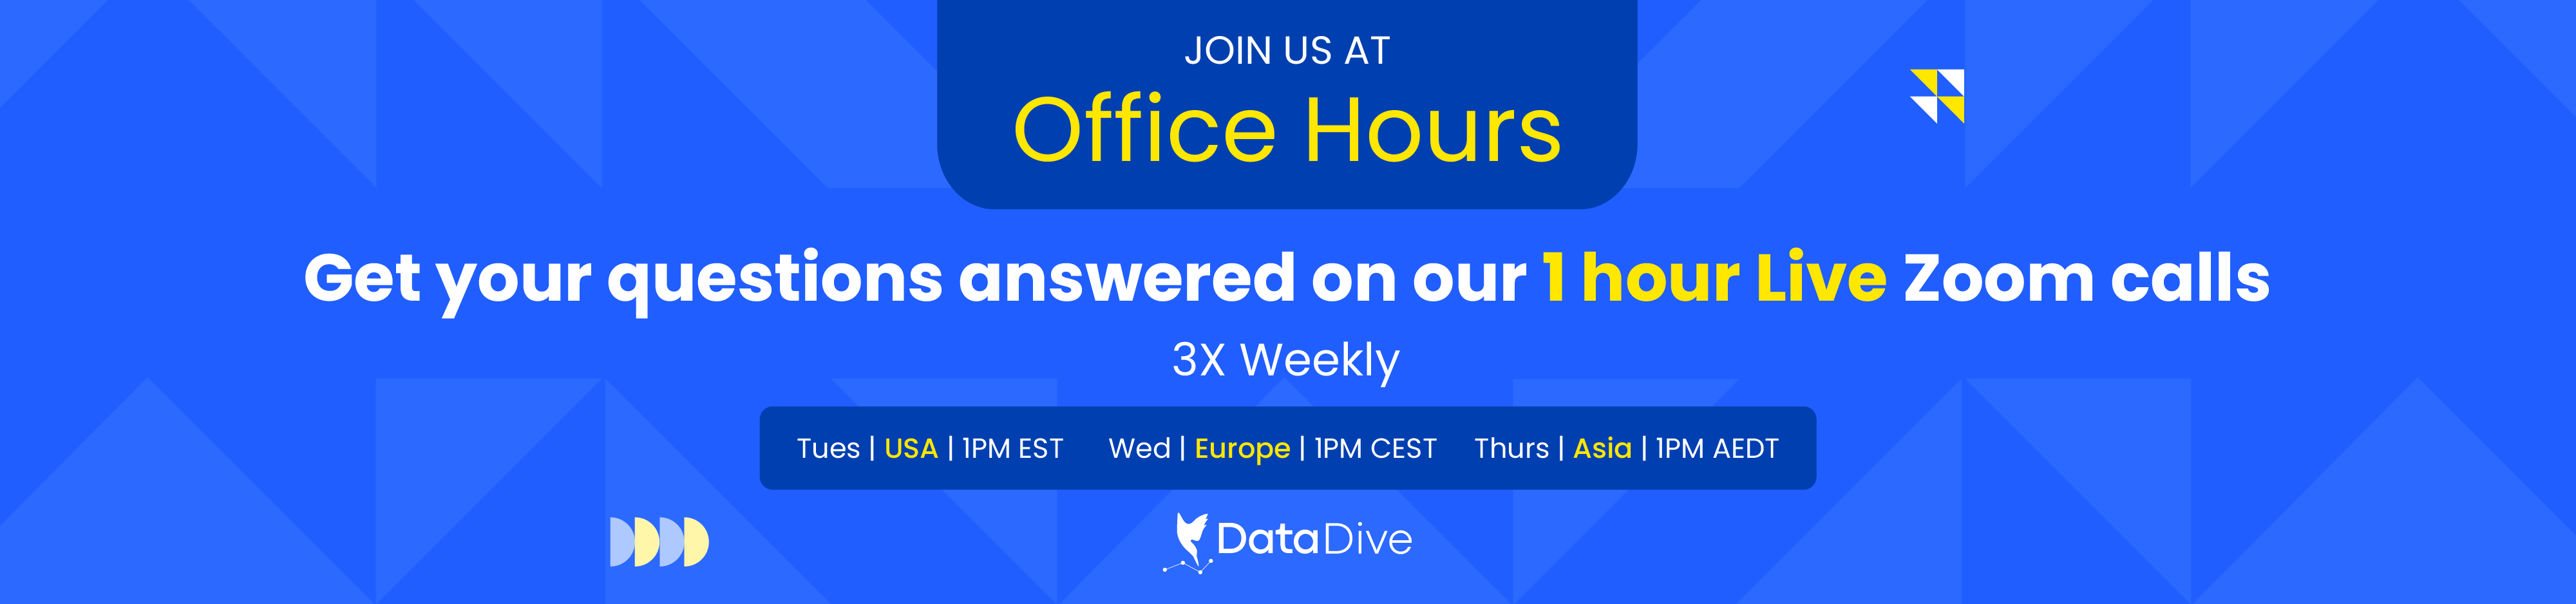 Office-Hours-HubSpot-header4